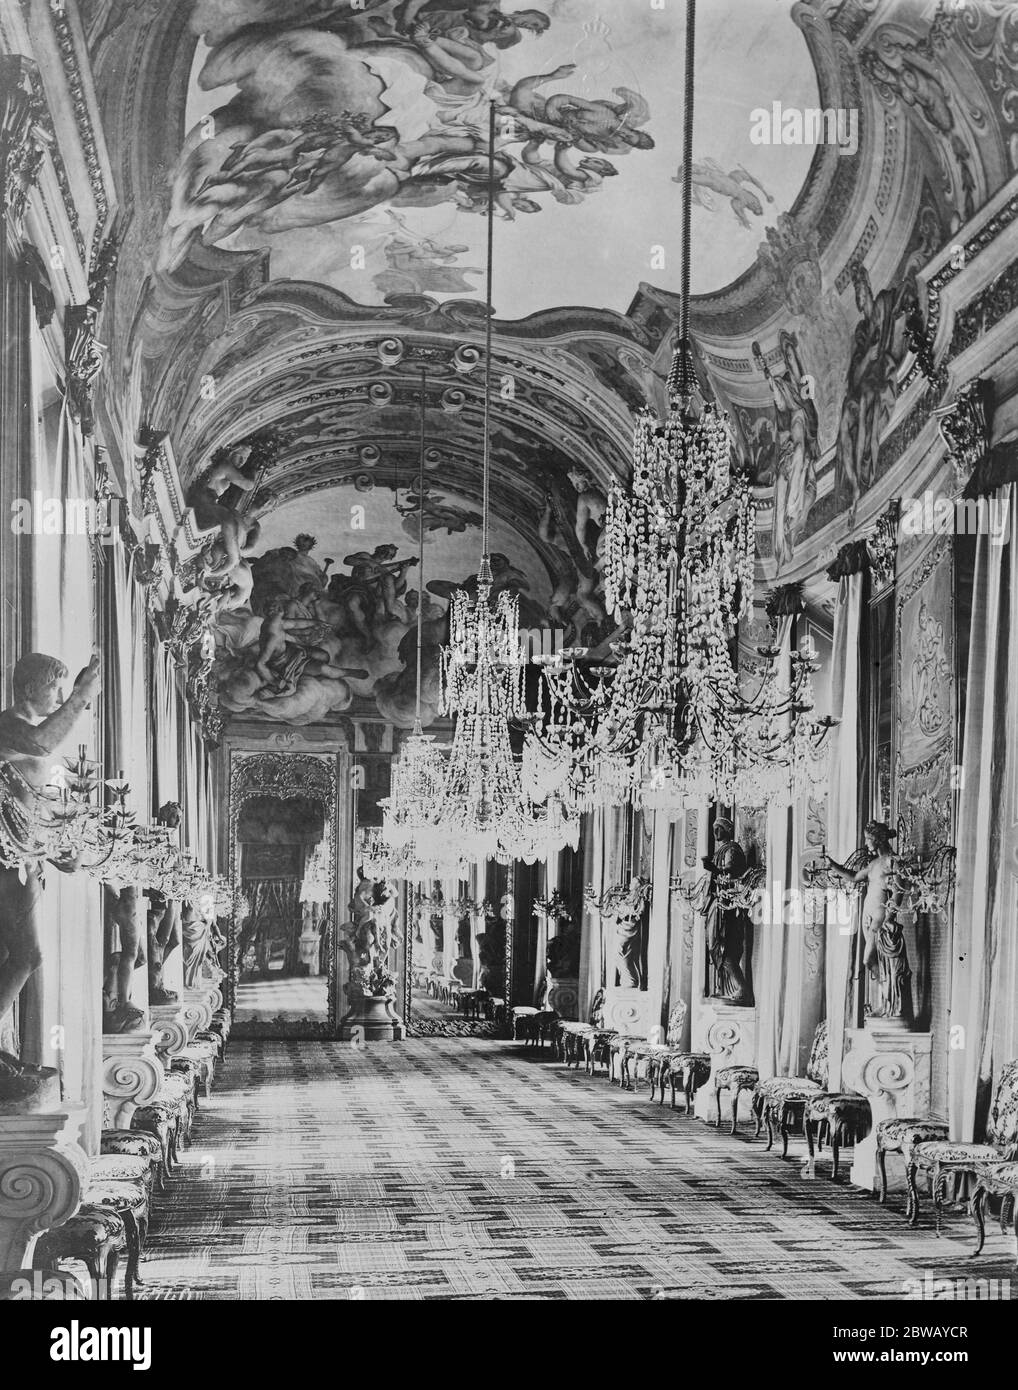 La Conferenza di Genova l'interno del Palazzo reale di Genova dove si terranno le importanti sedute della Conferenza 31 Mach 1922 Foto Stock